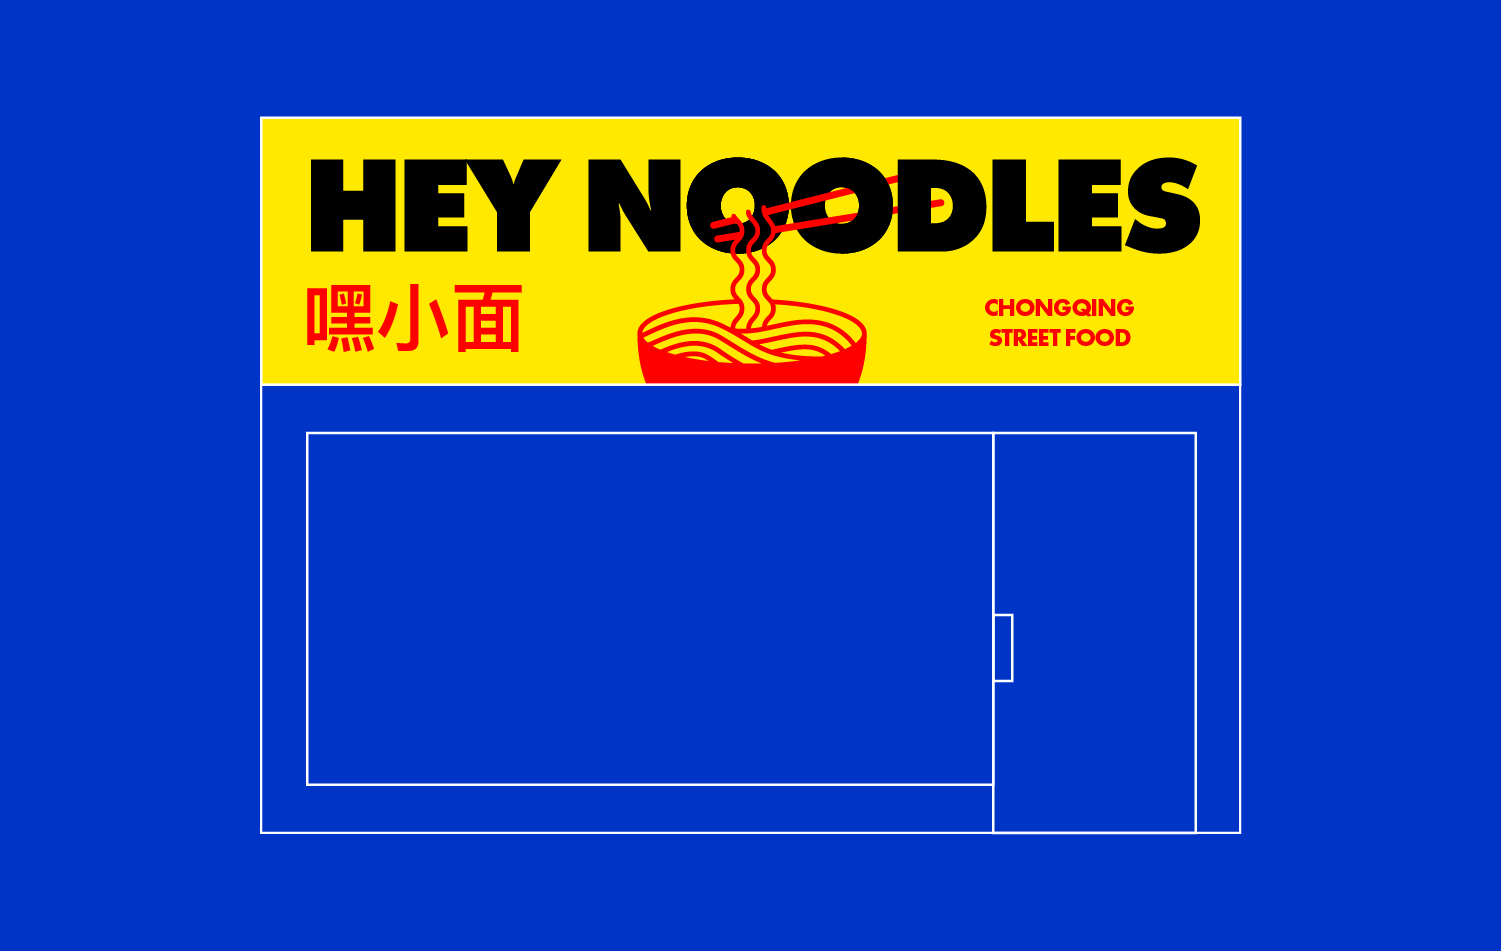 Hey Noodles Restaurant Signage